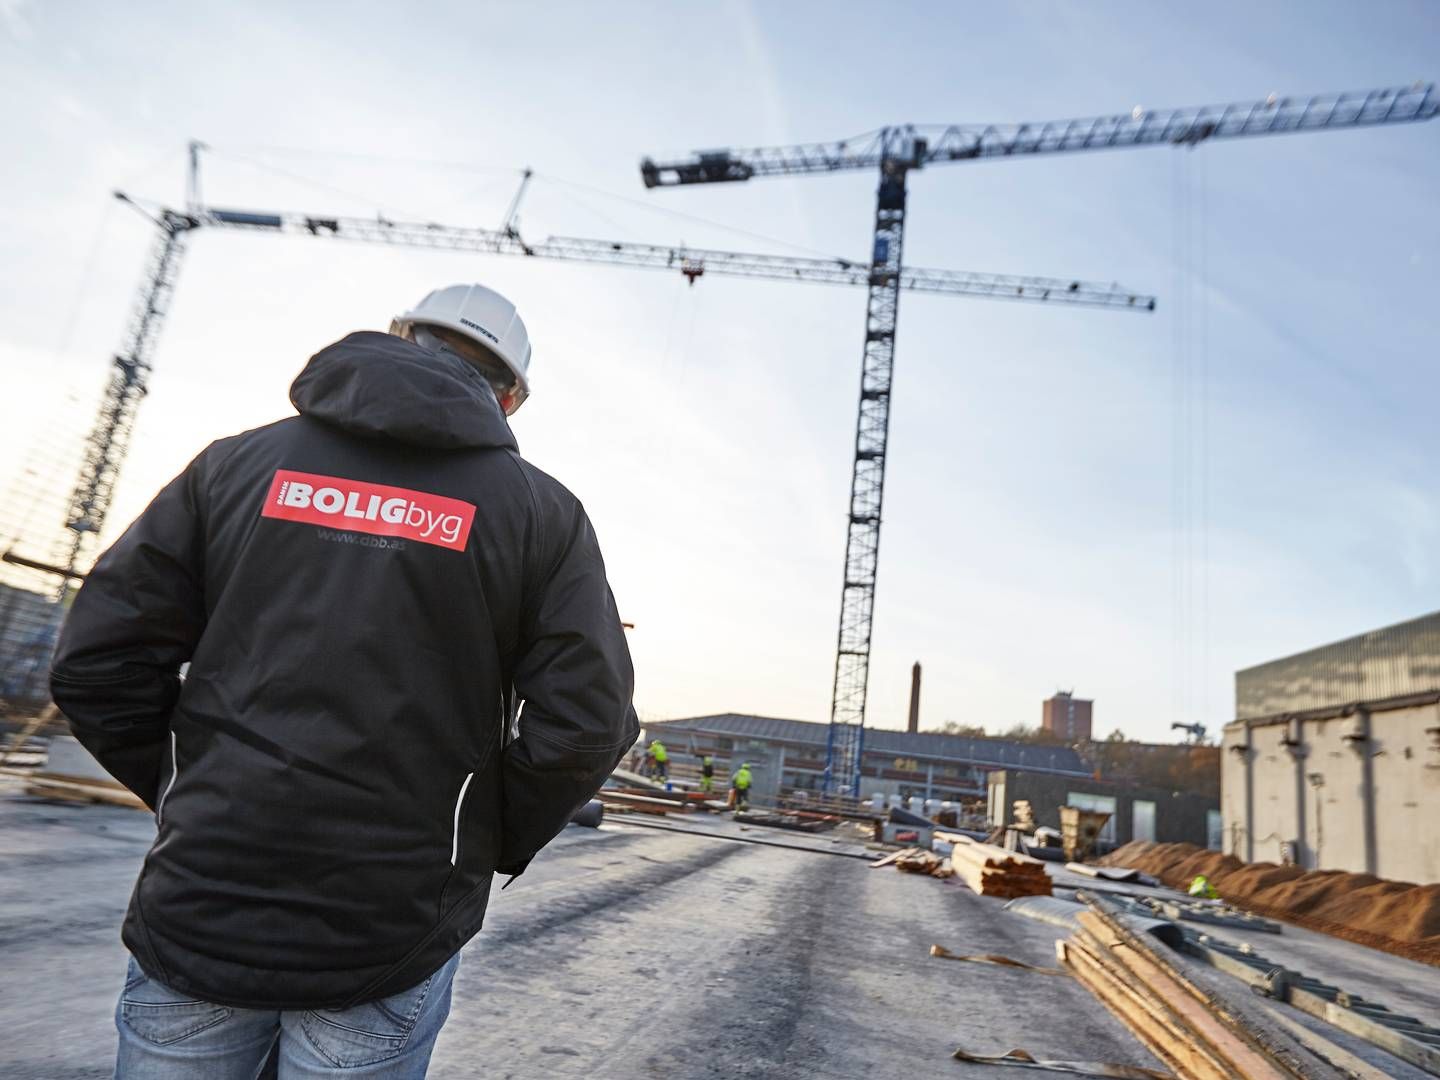 Trods et vanskeligt år har milliardvirksomheden Dansk Boligbyg gang i flere byggeprojekter blandt andet i Hørsholm, Gentofte og i midtjyske Tørring. | Foto: PR / Dansk Boligbyg